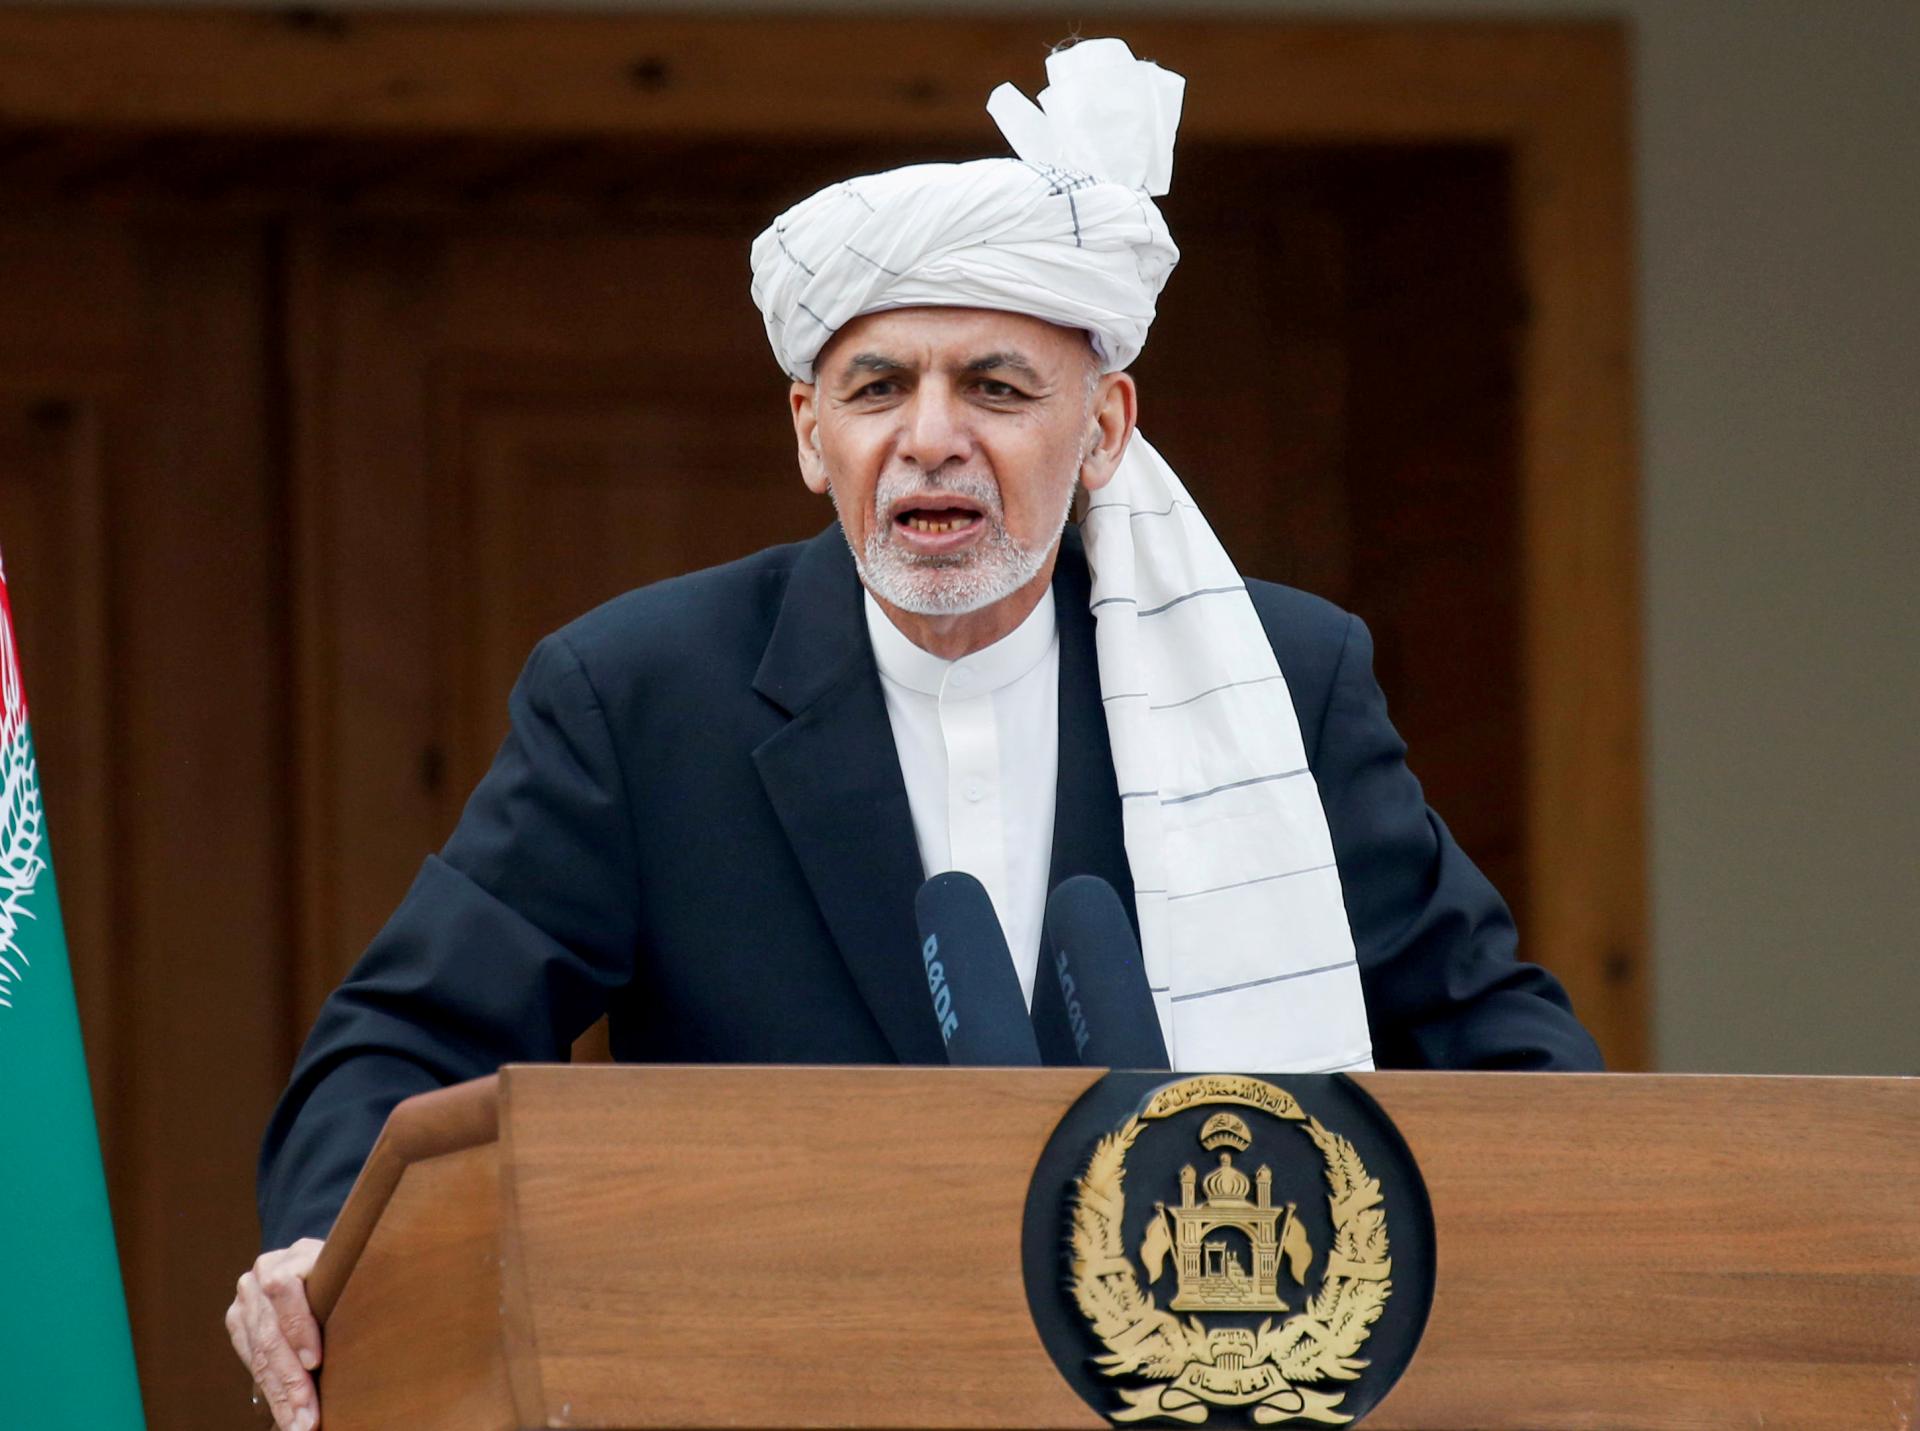 Avganistanski predsednik Ghani 25. juna u poseti SAD-u